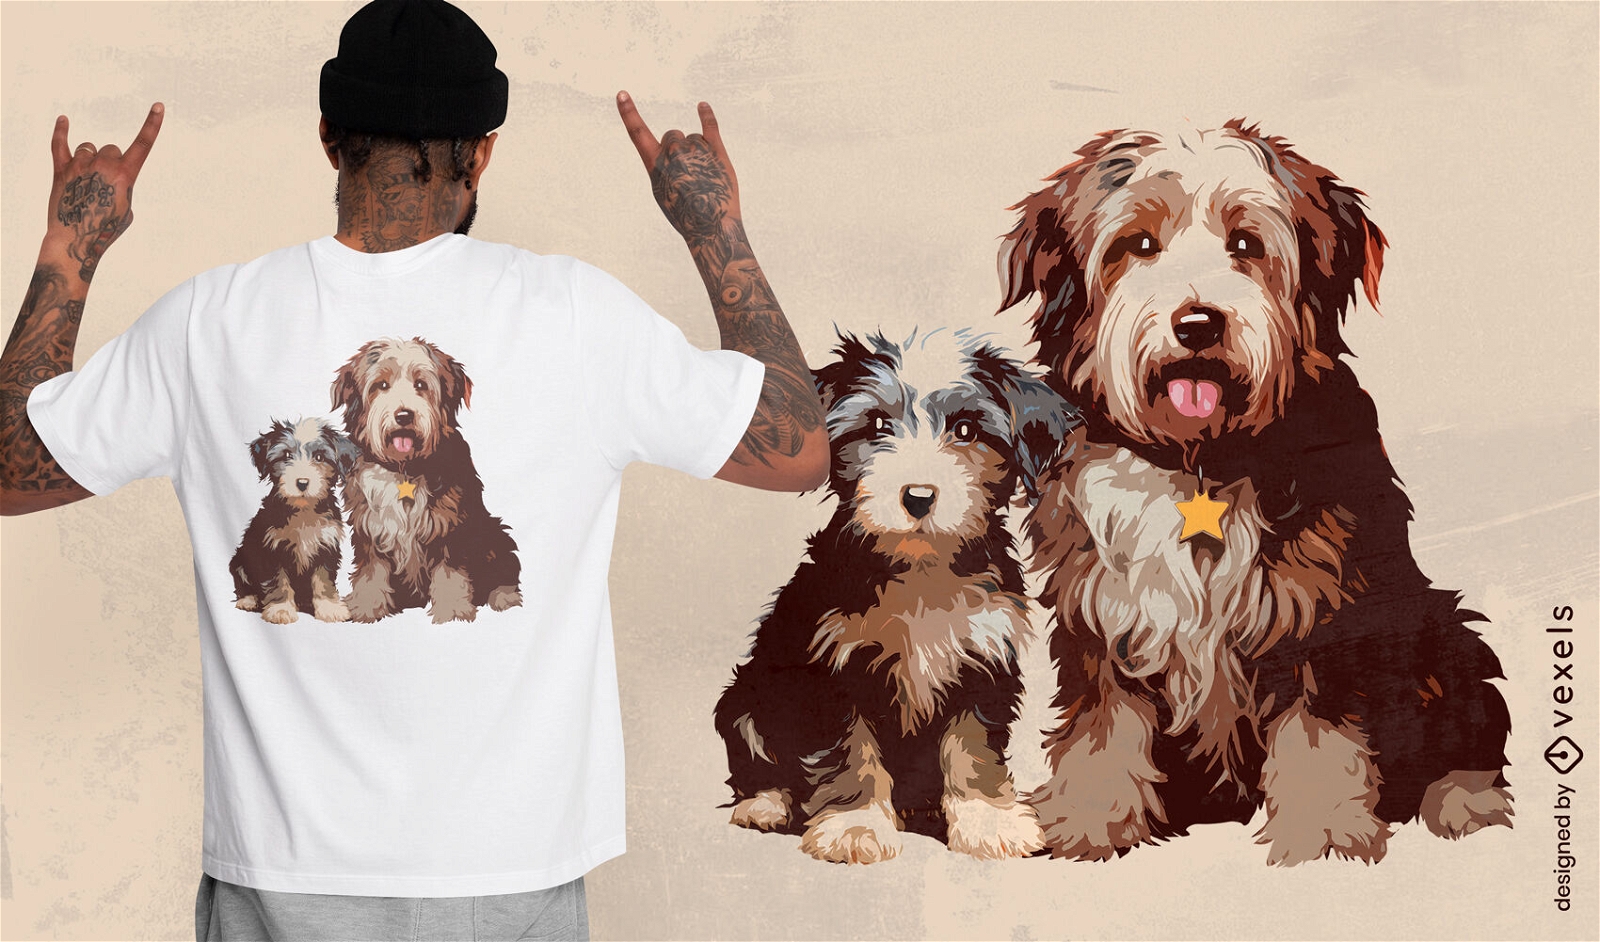 Diseño de camiseta de dos perros Bob Tail.